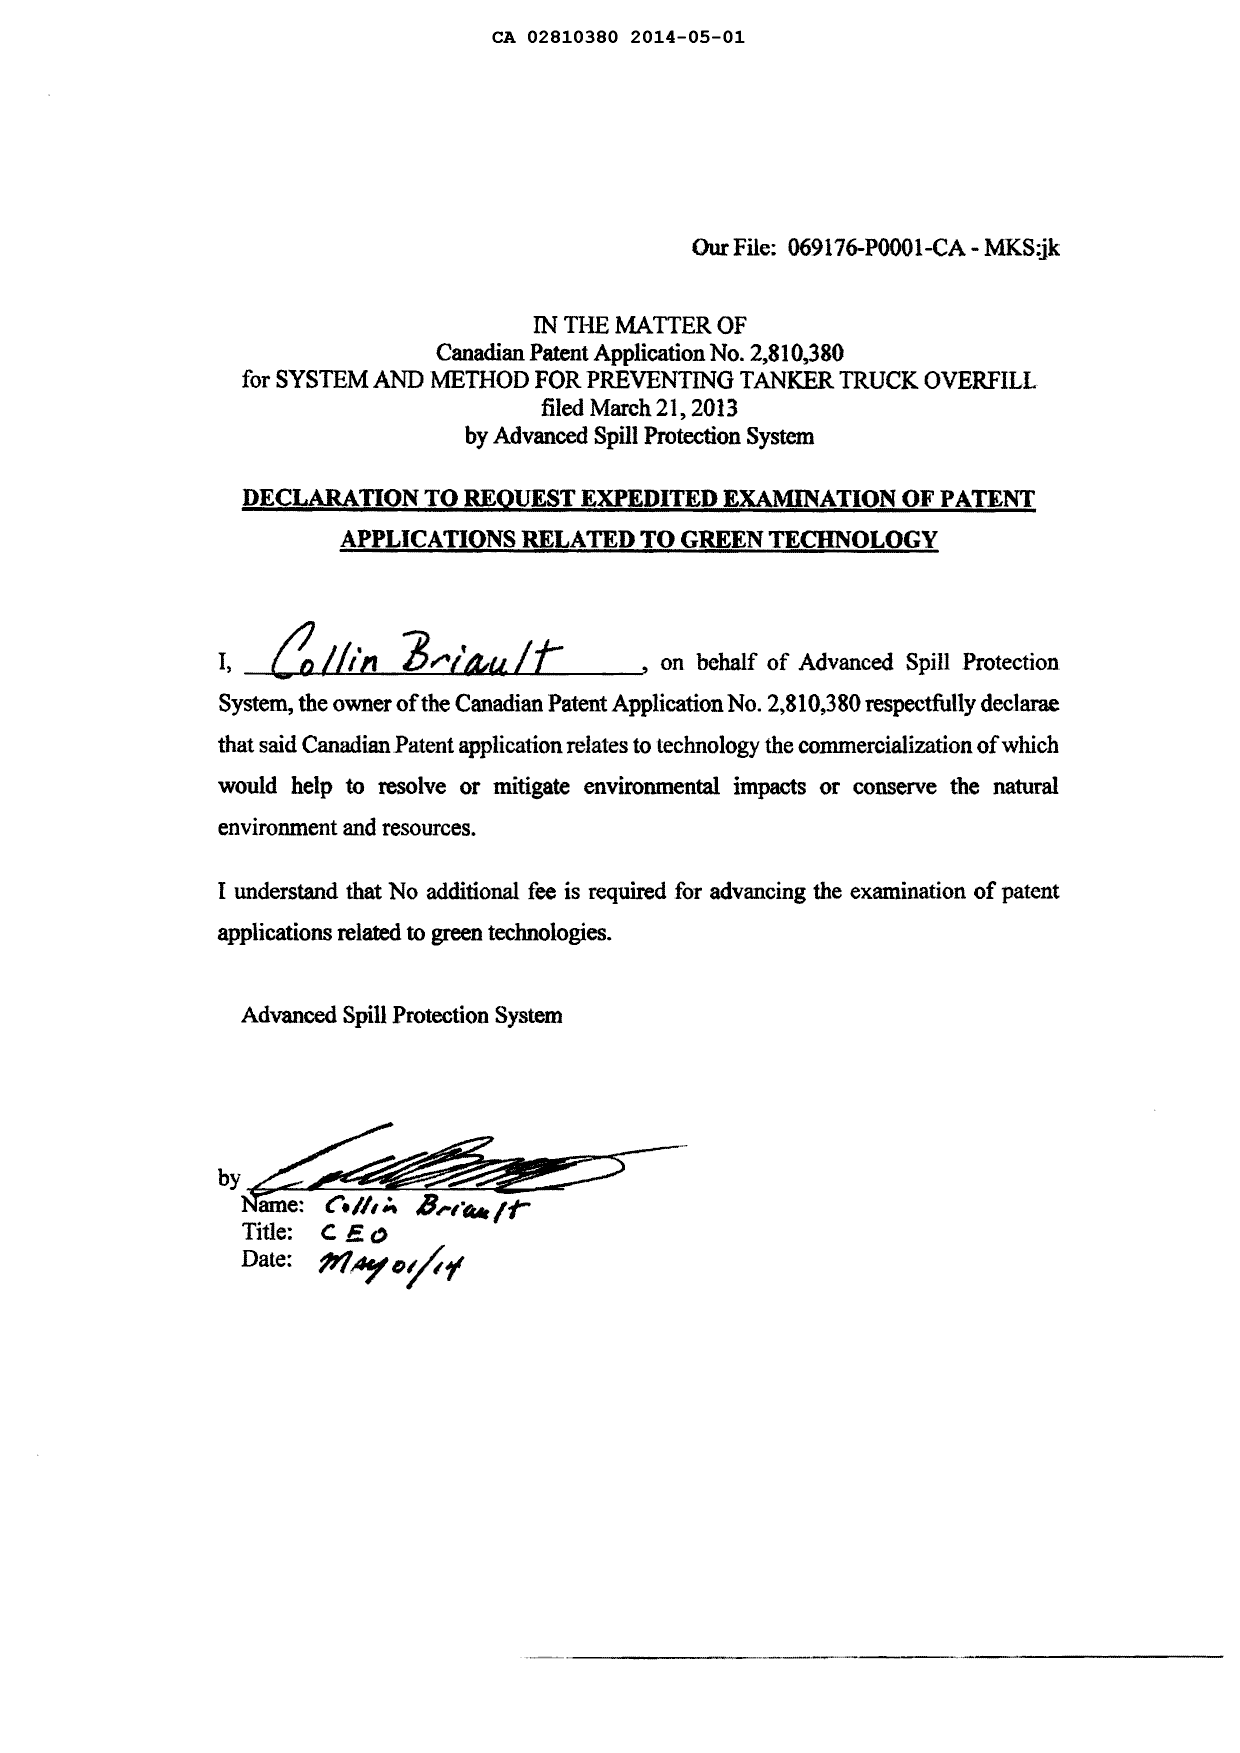 Document de brevet canadien 2810380. Poursuite-Amendment 20131201. Image 2 de 2